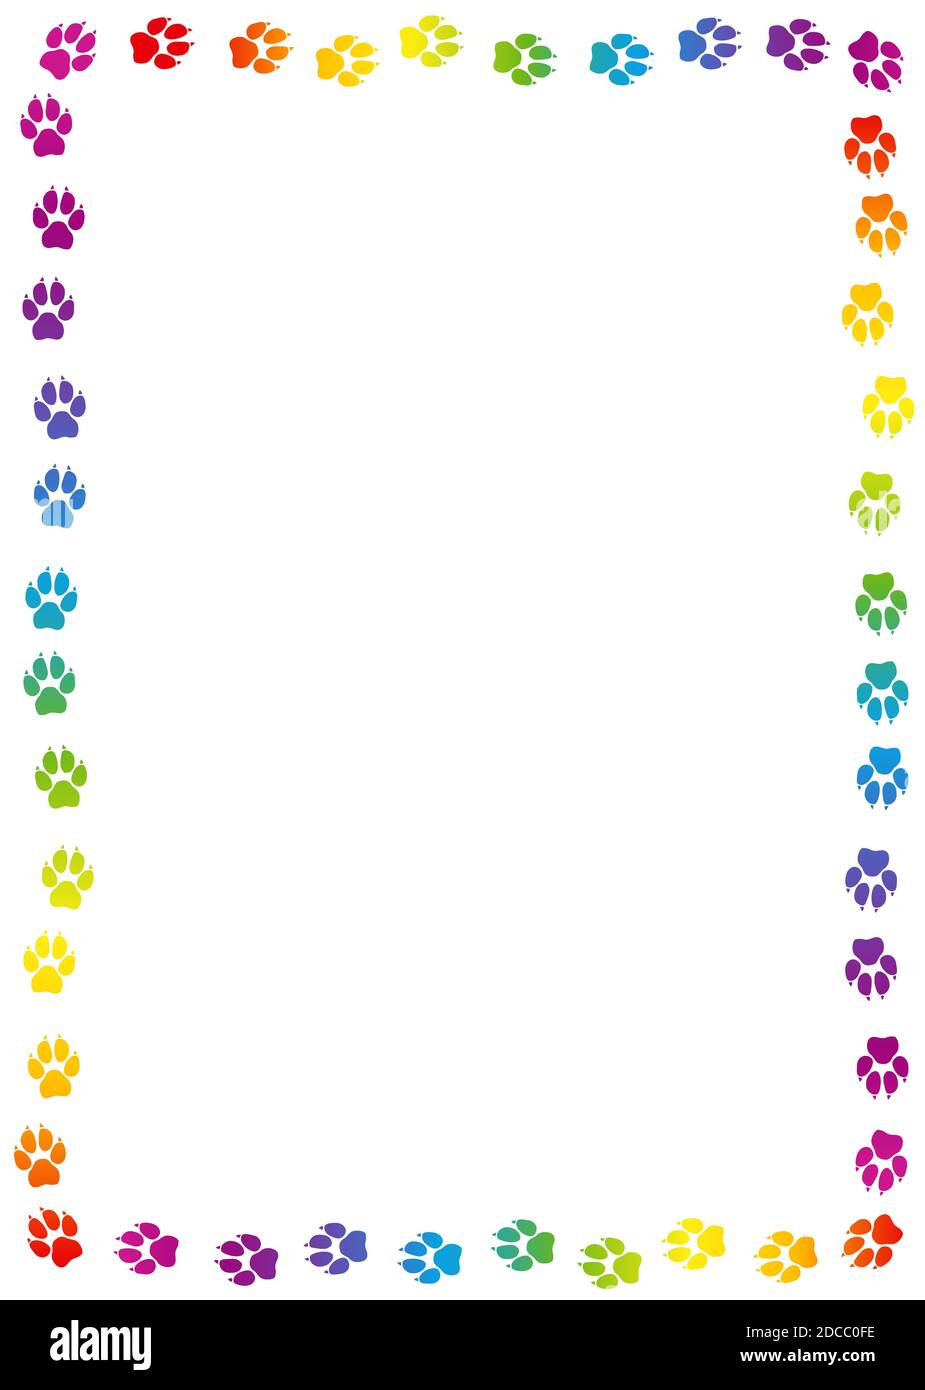 Rahmen mit Hunde-Pfote. Regenbogenfarbene Hundespur, bunte Fußabdrücke - Illustration auf weißem Hintergrund. Stockfoto